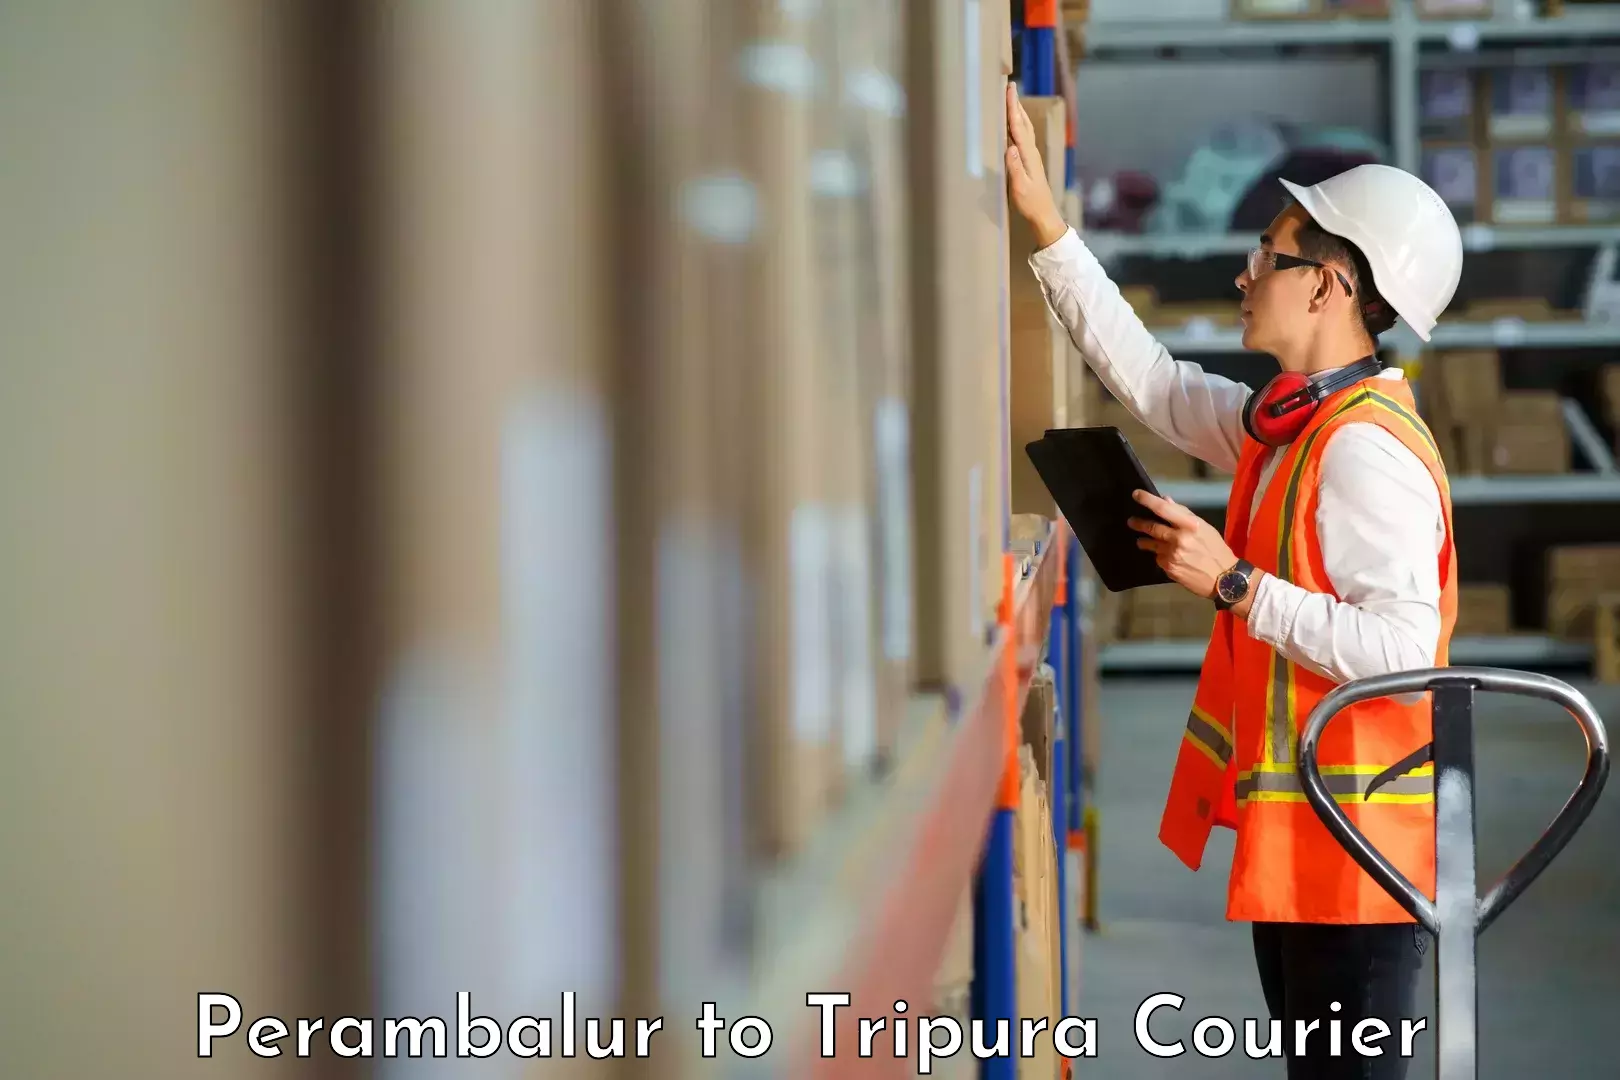 Premium courier solutions Perambalur to IIIT Agartala